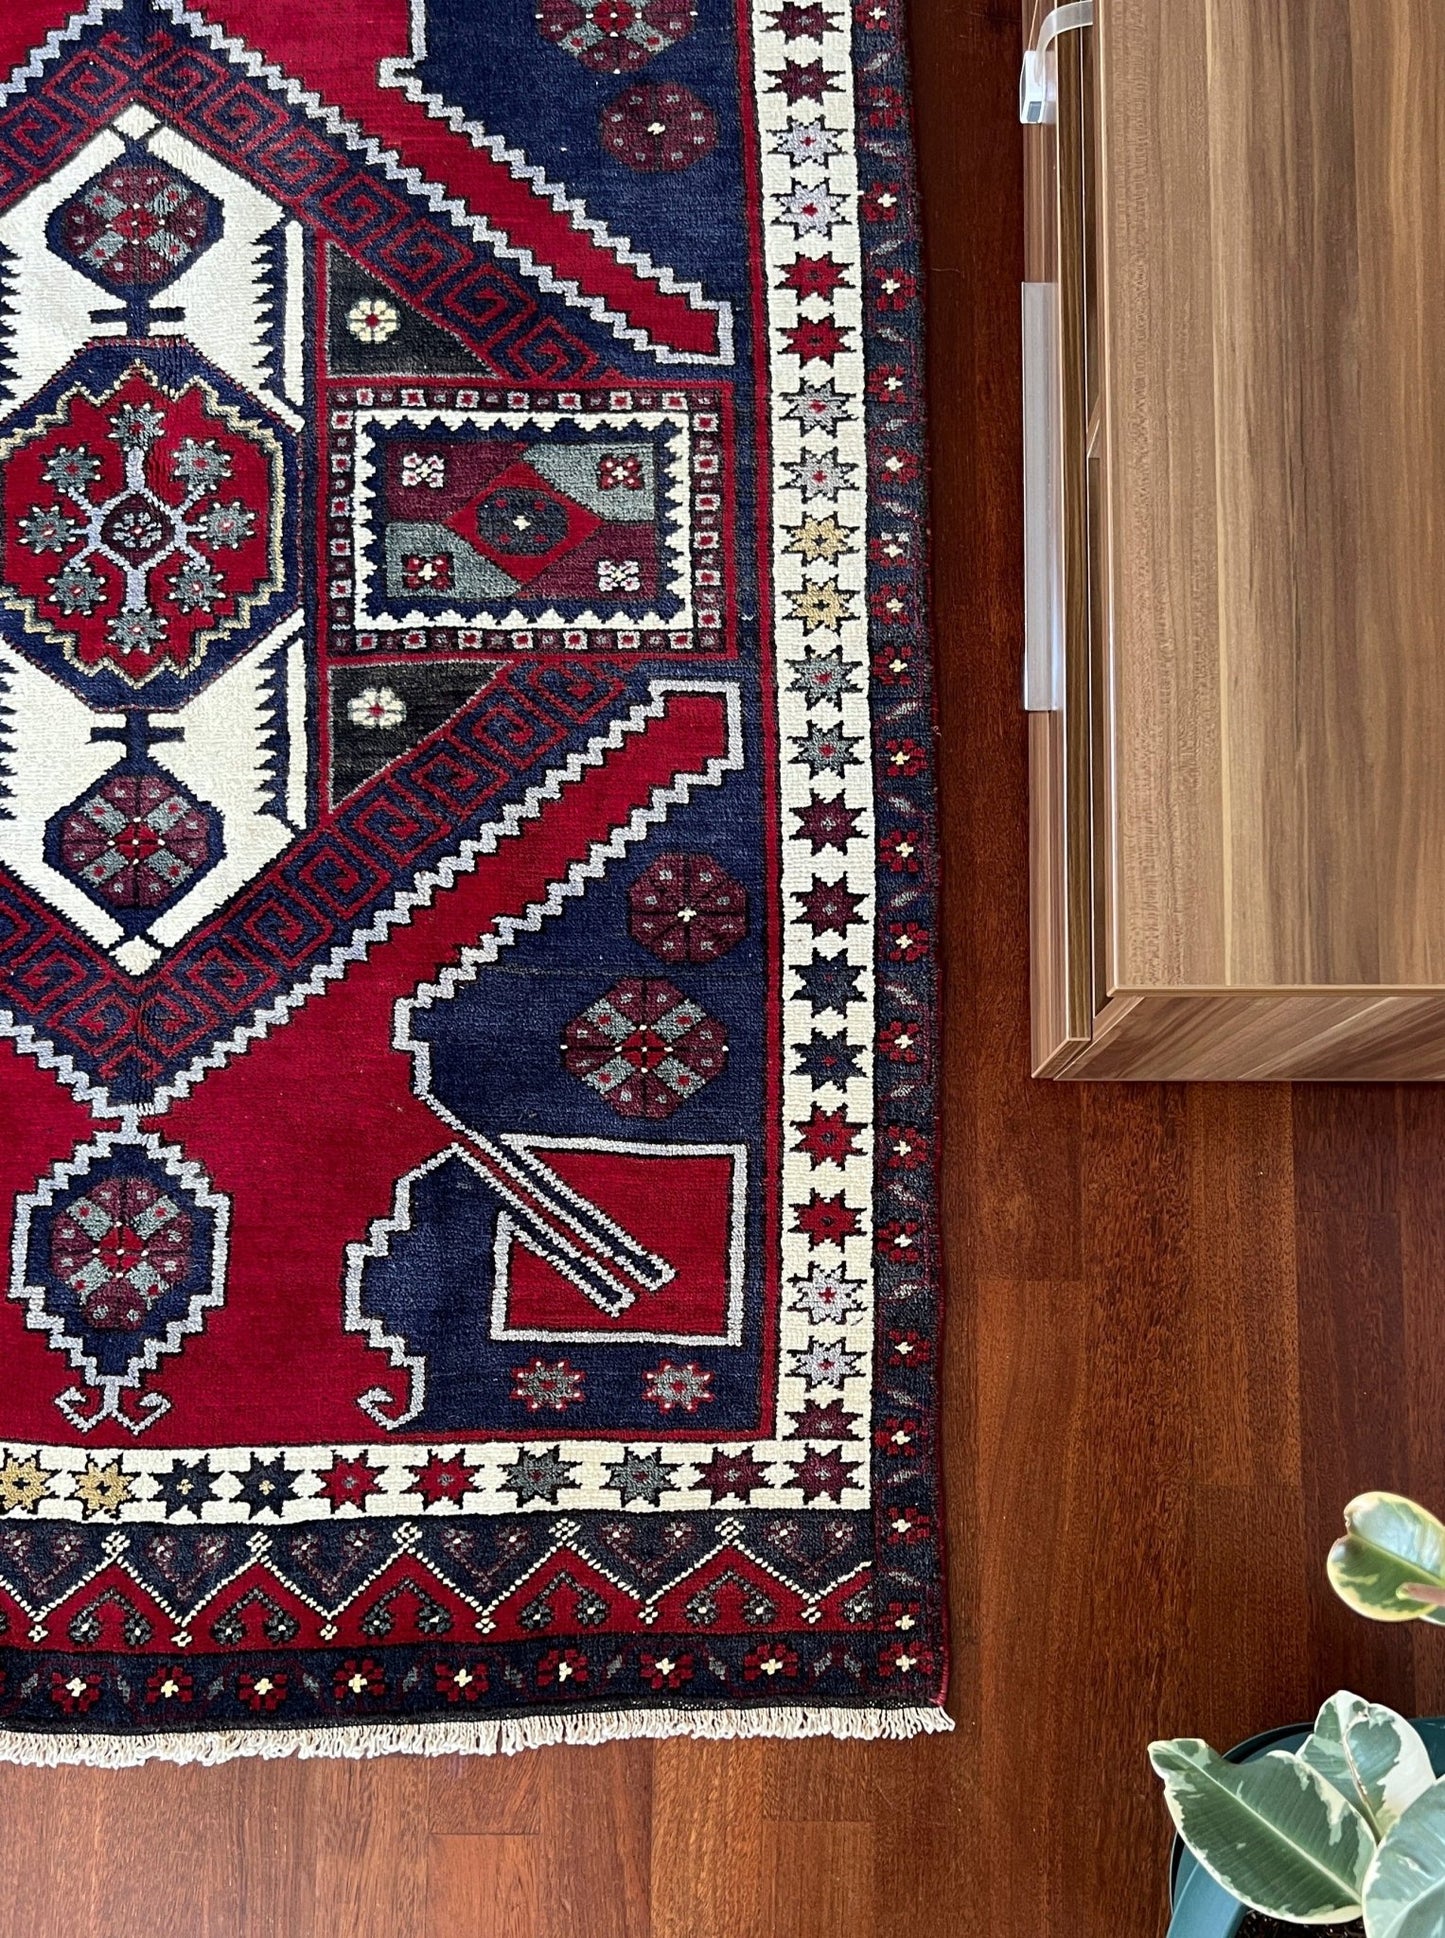 konya karapinar turkish rug shop palo alto oriental rugs berkeley vintage rug shop san francisco bay area buy rugs online